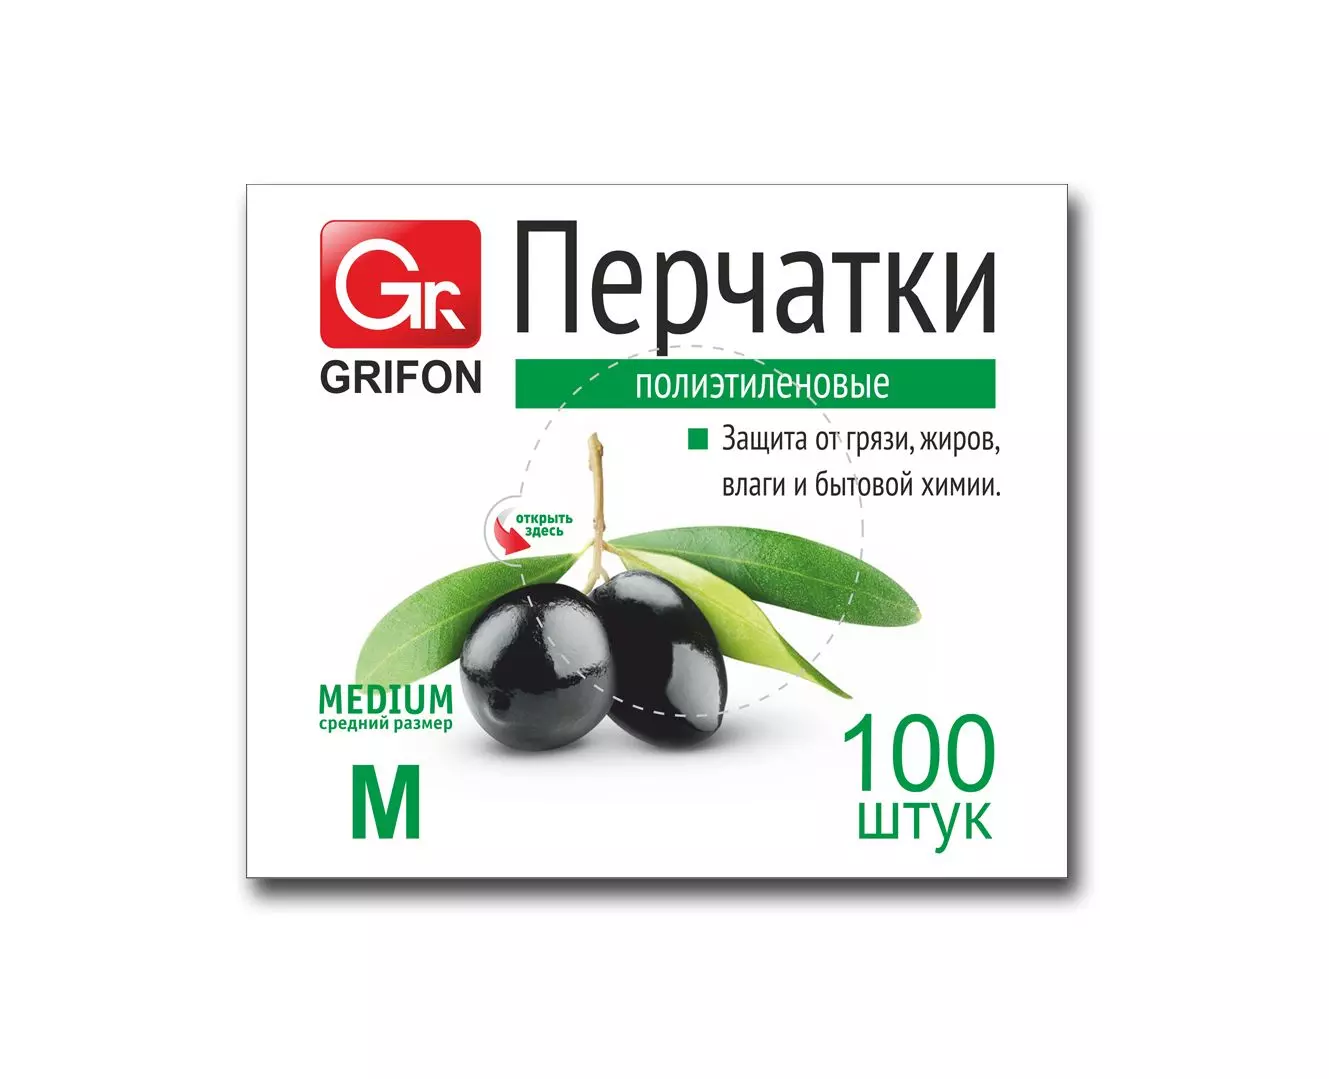 Перчатки полиэтиленовые Grifon, р-р М, 100 шт. в п/э упаковке 303-018